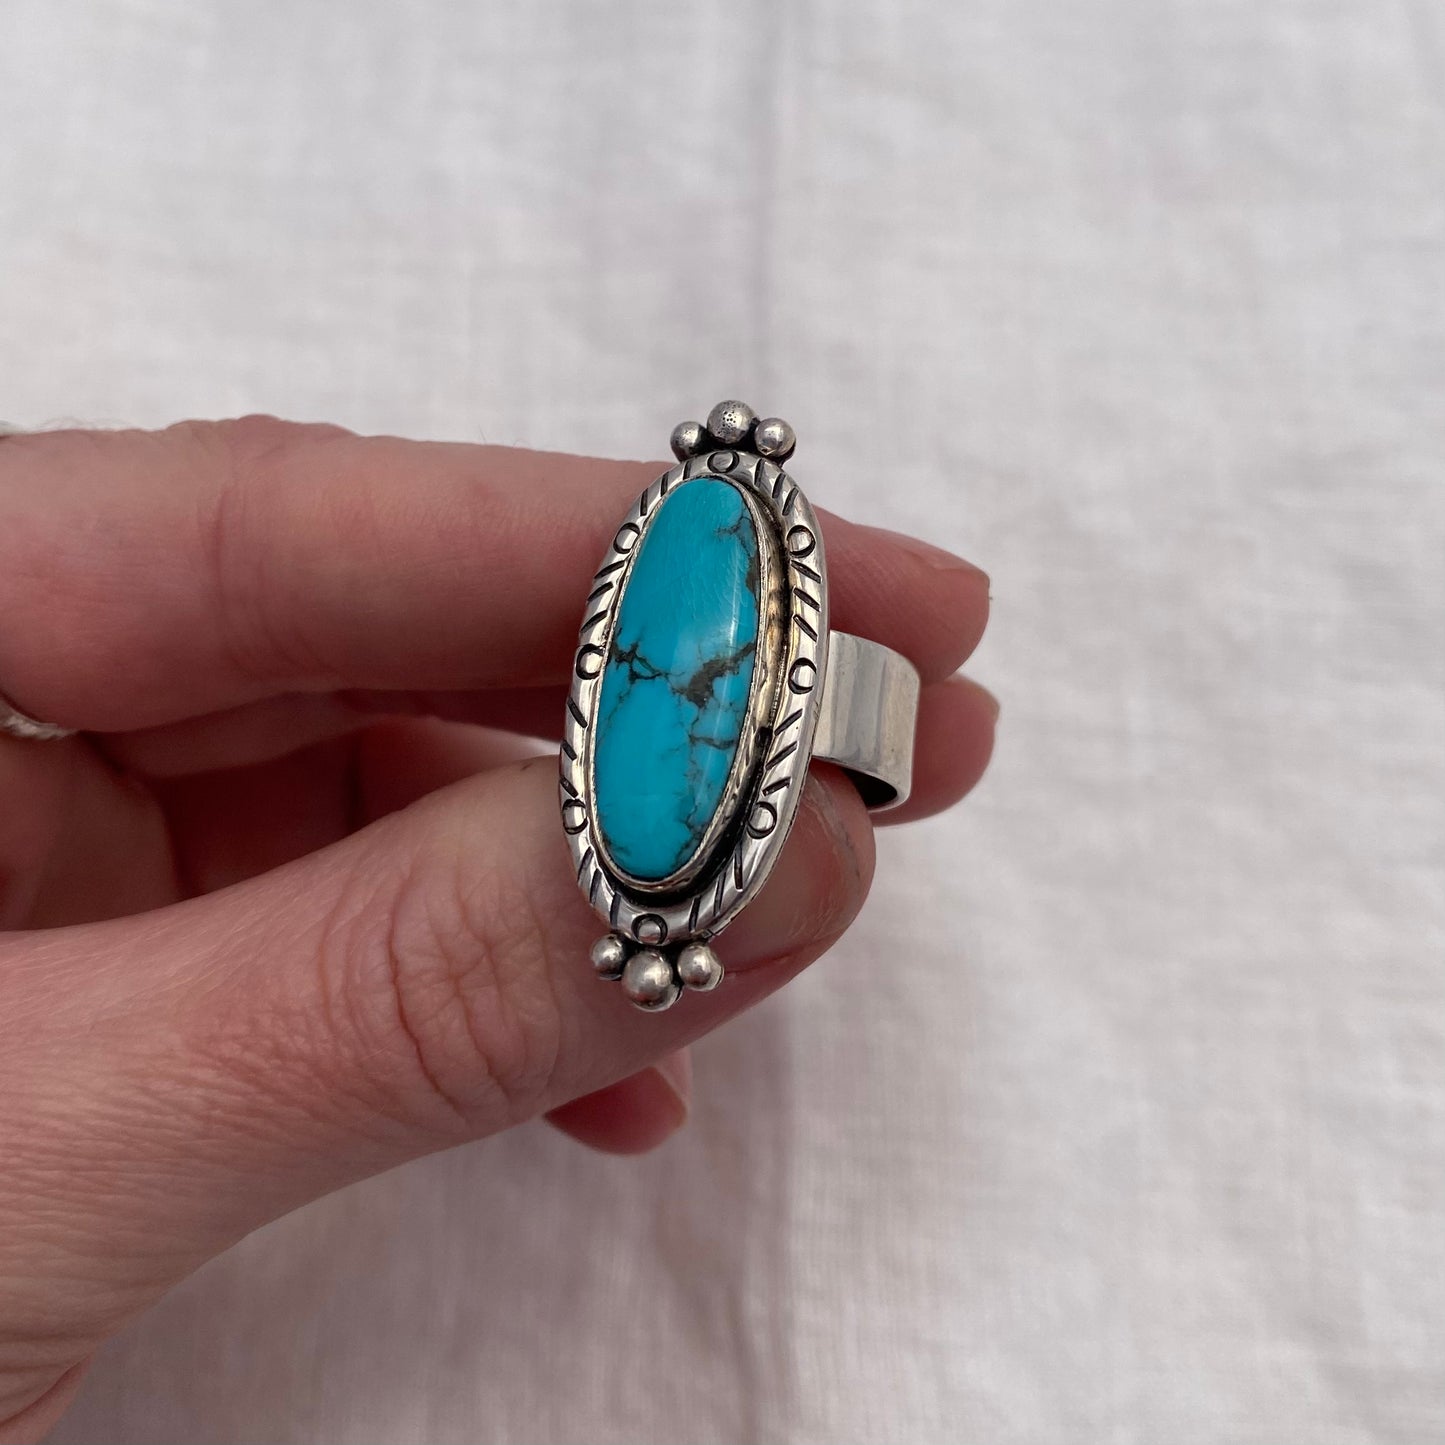 Nevada Turquoise Ring - Size 7